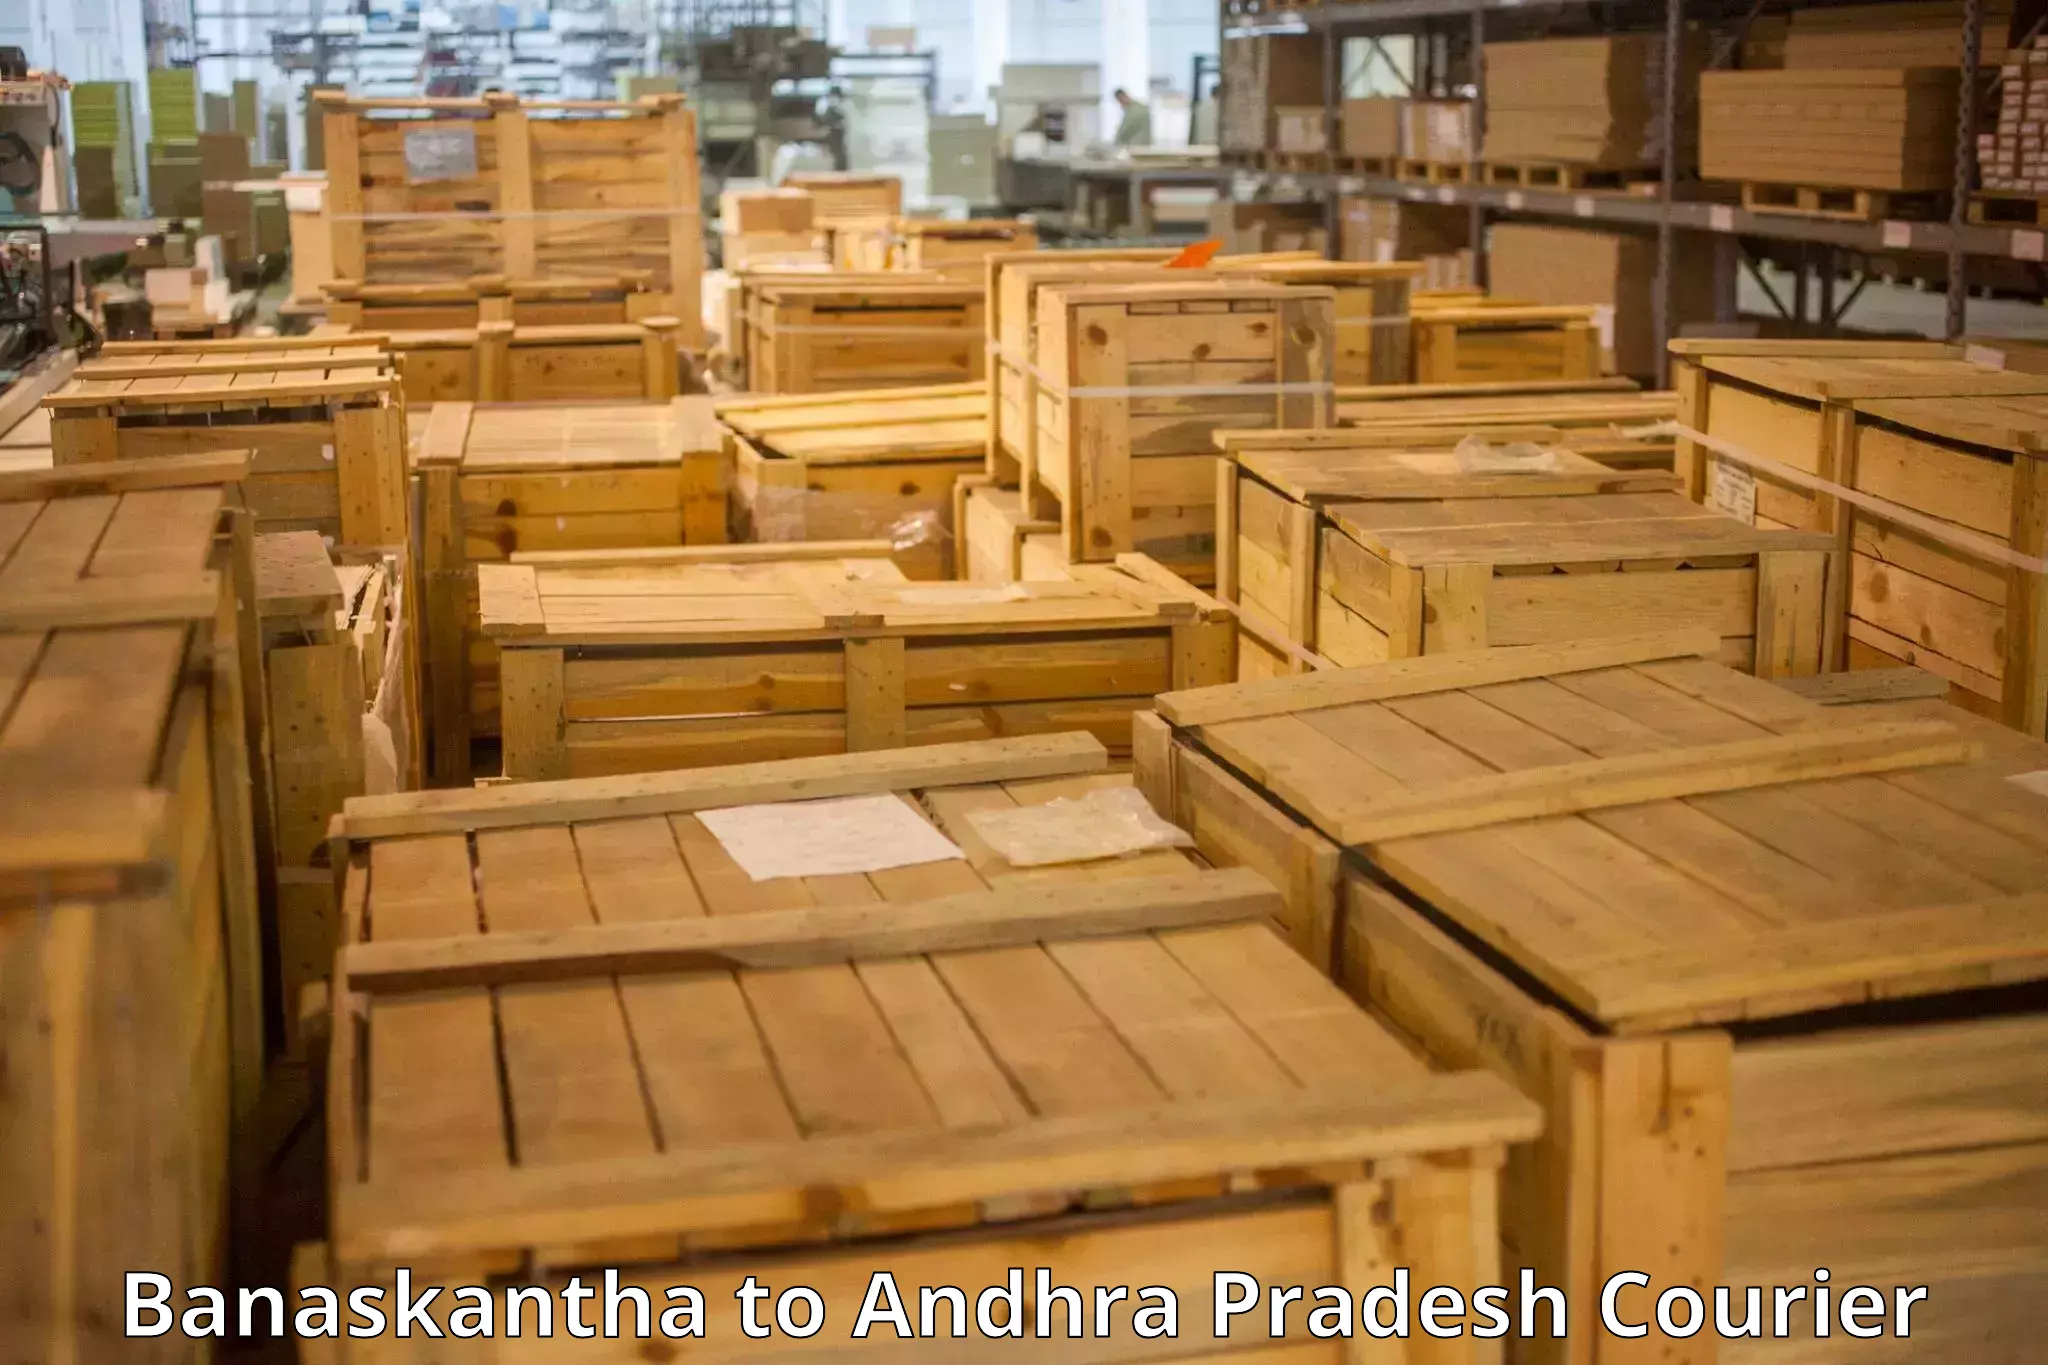 Baggage shipping experts Banaskantha to Buckinghampet